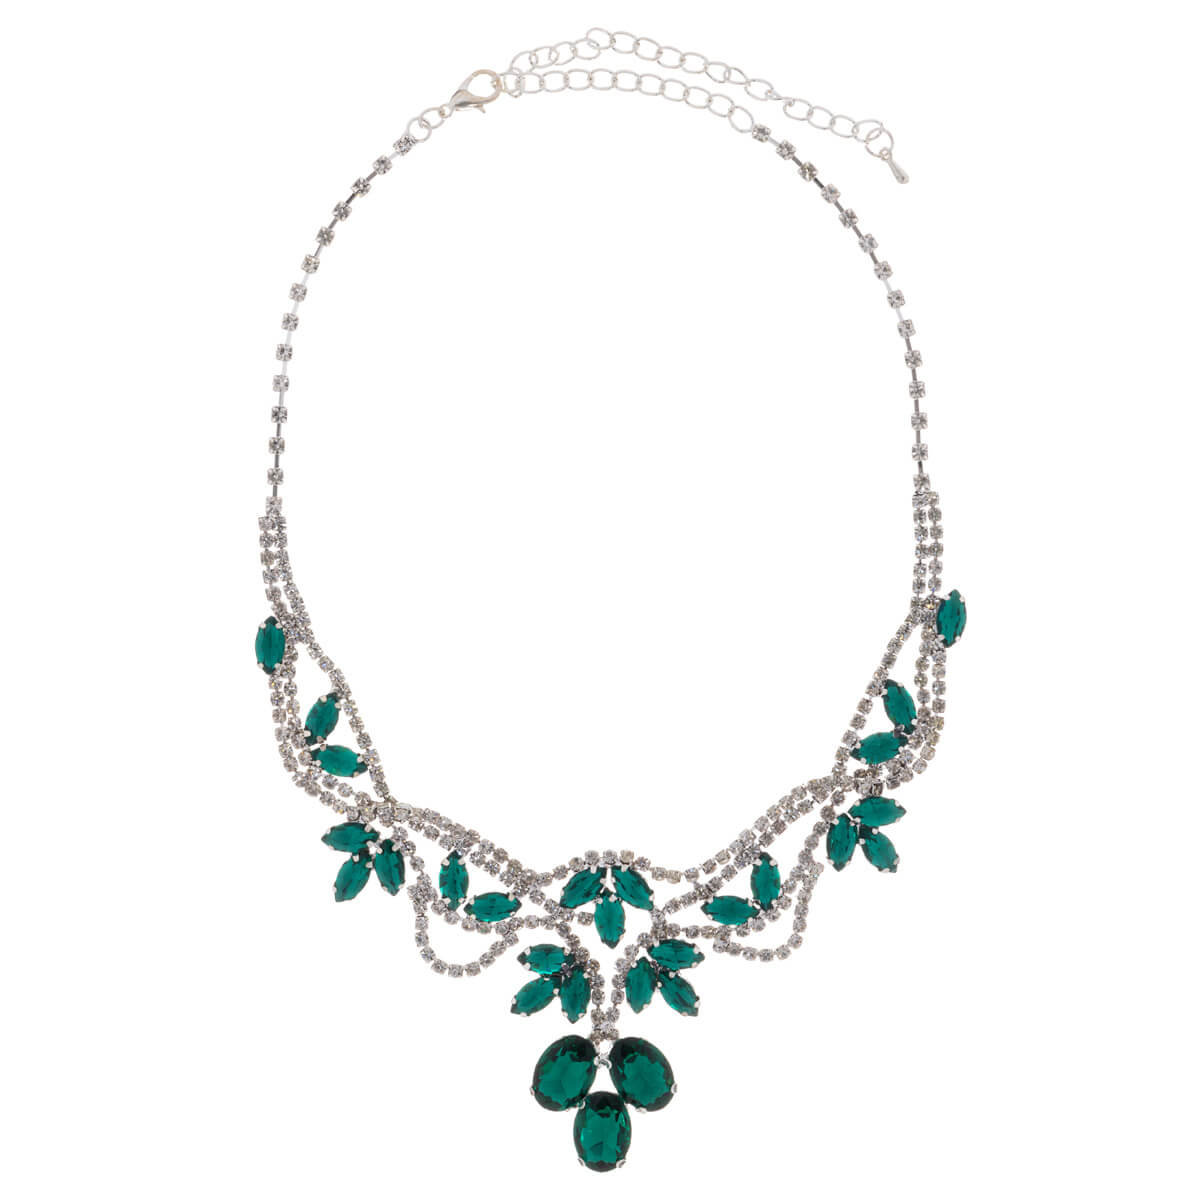 Glass stone festive necklace